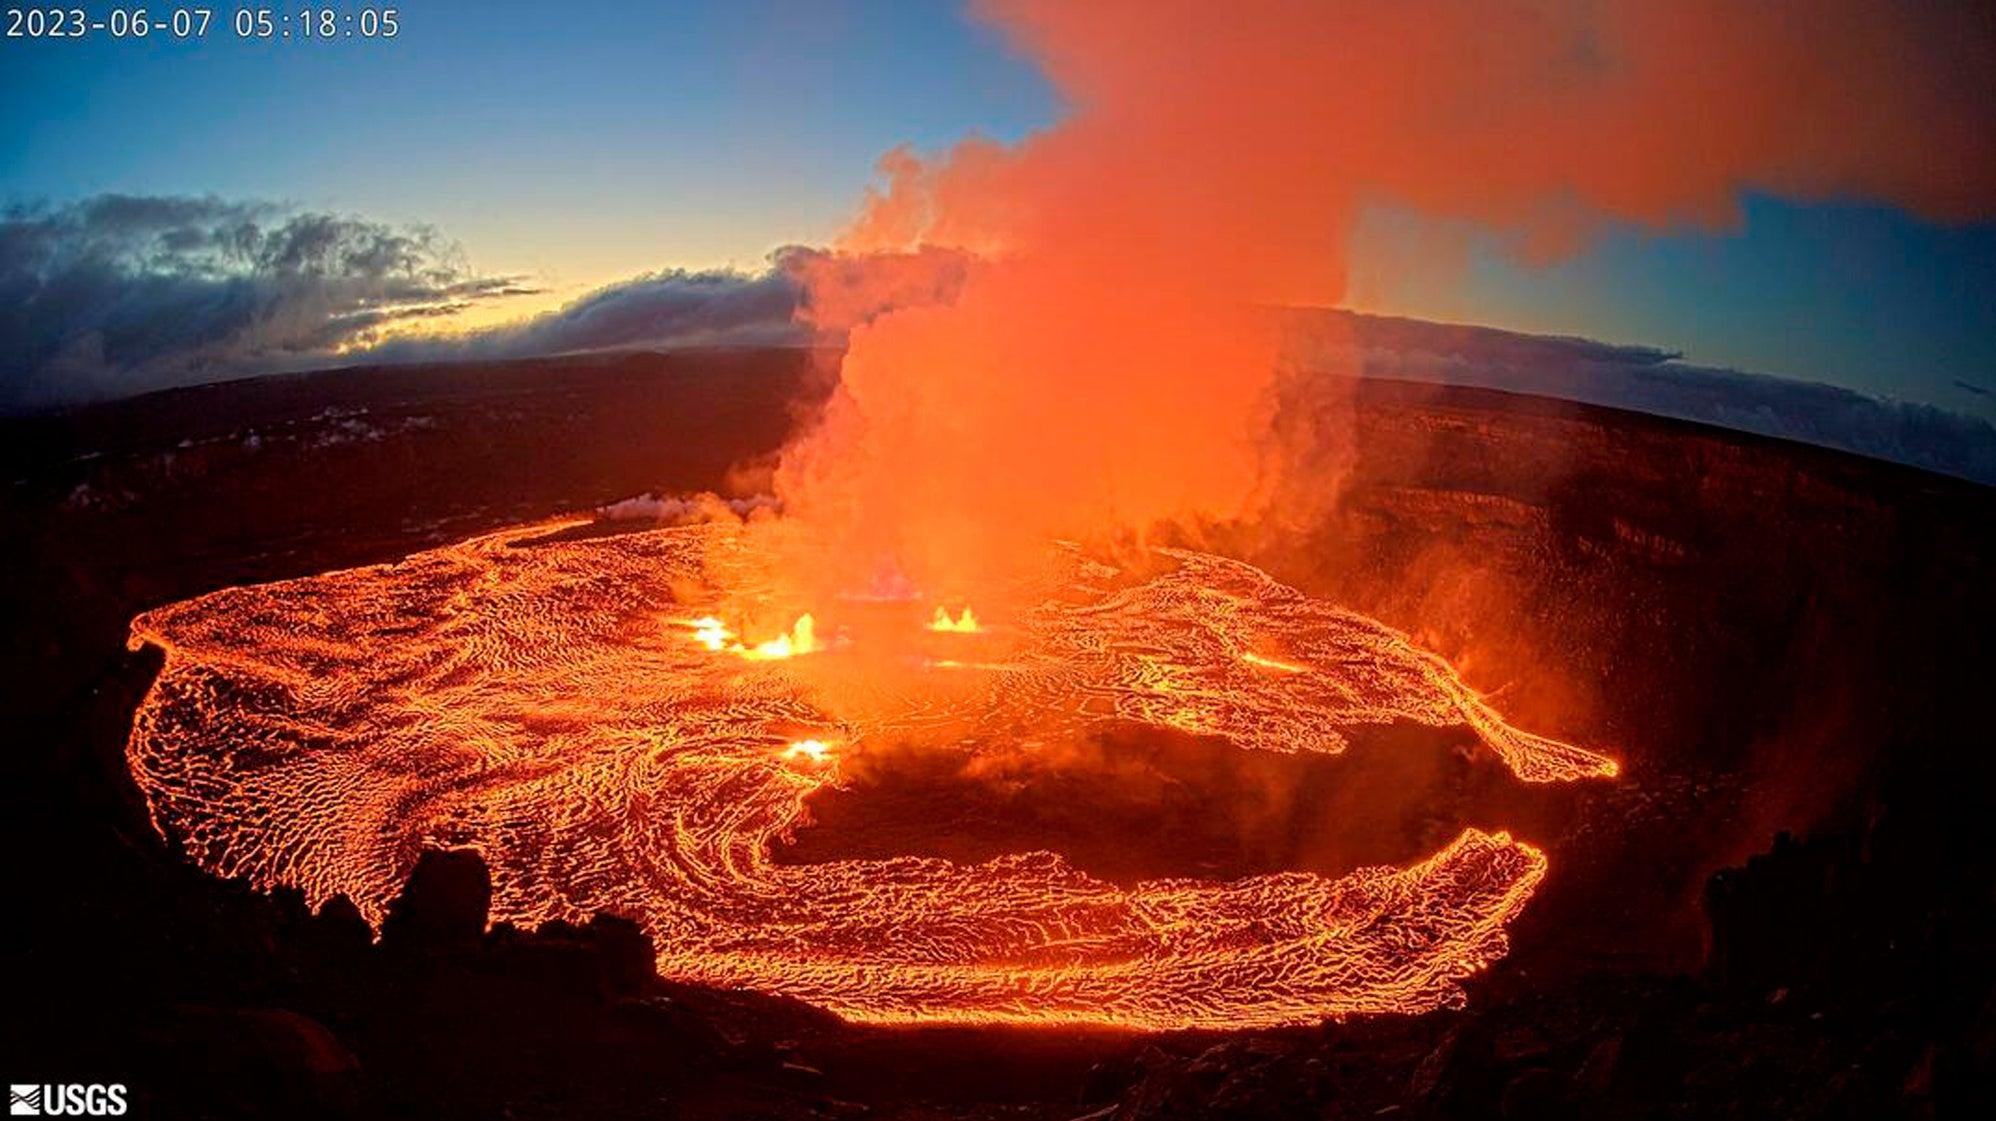 صورة بكاميرا الويب مقدمة من هيئة المسح الجيولوجي الأمريكية لثوران بركان كيلويا في 7 يونيو 2023.